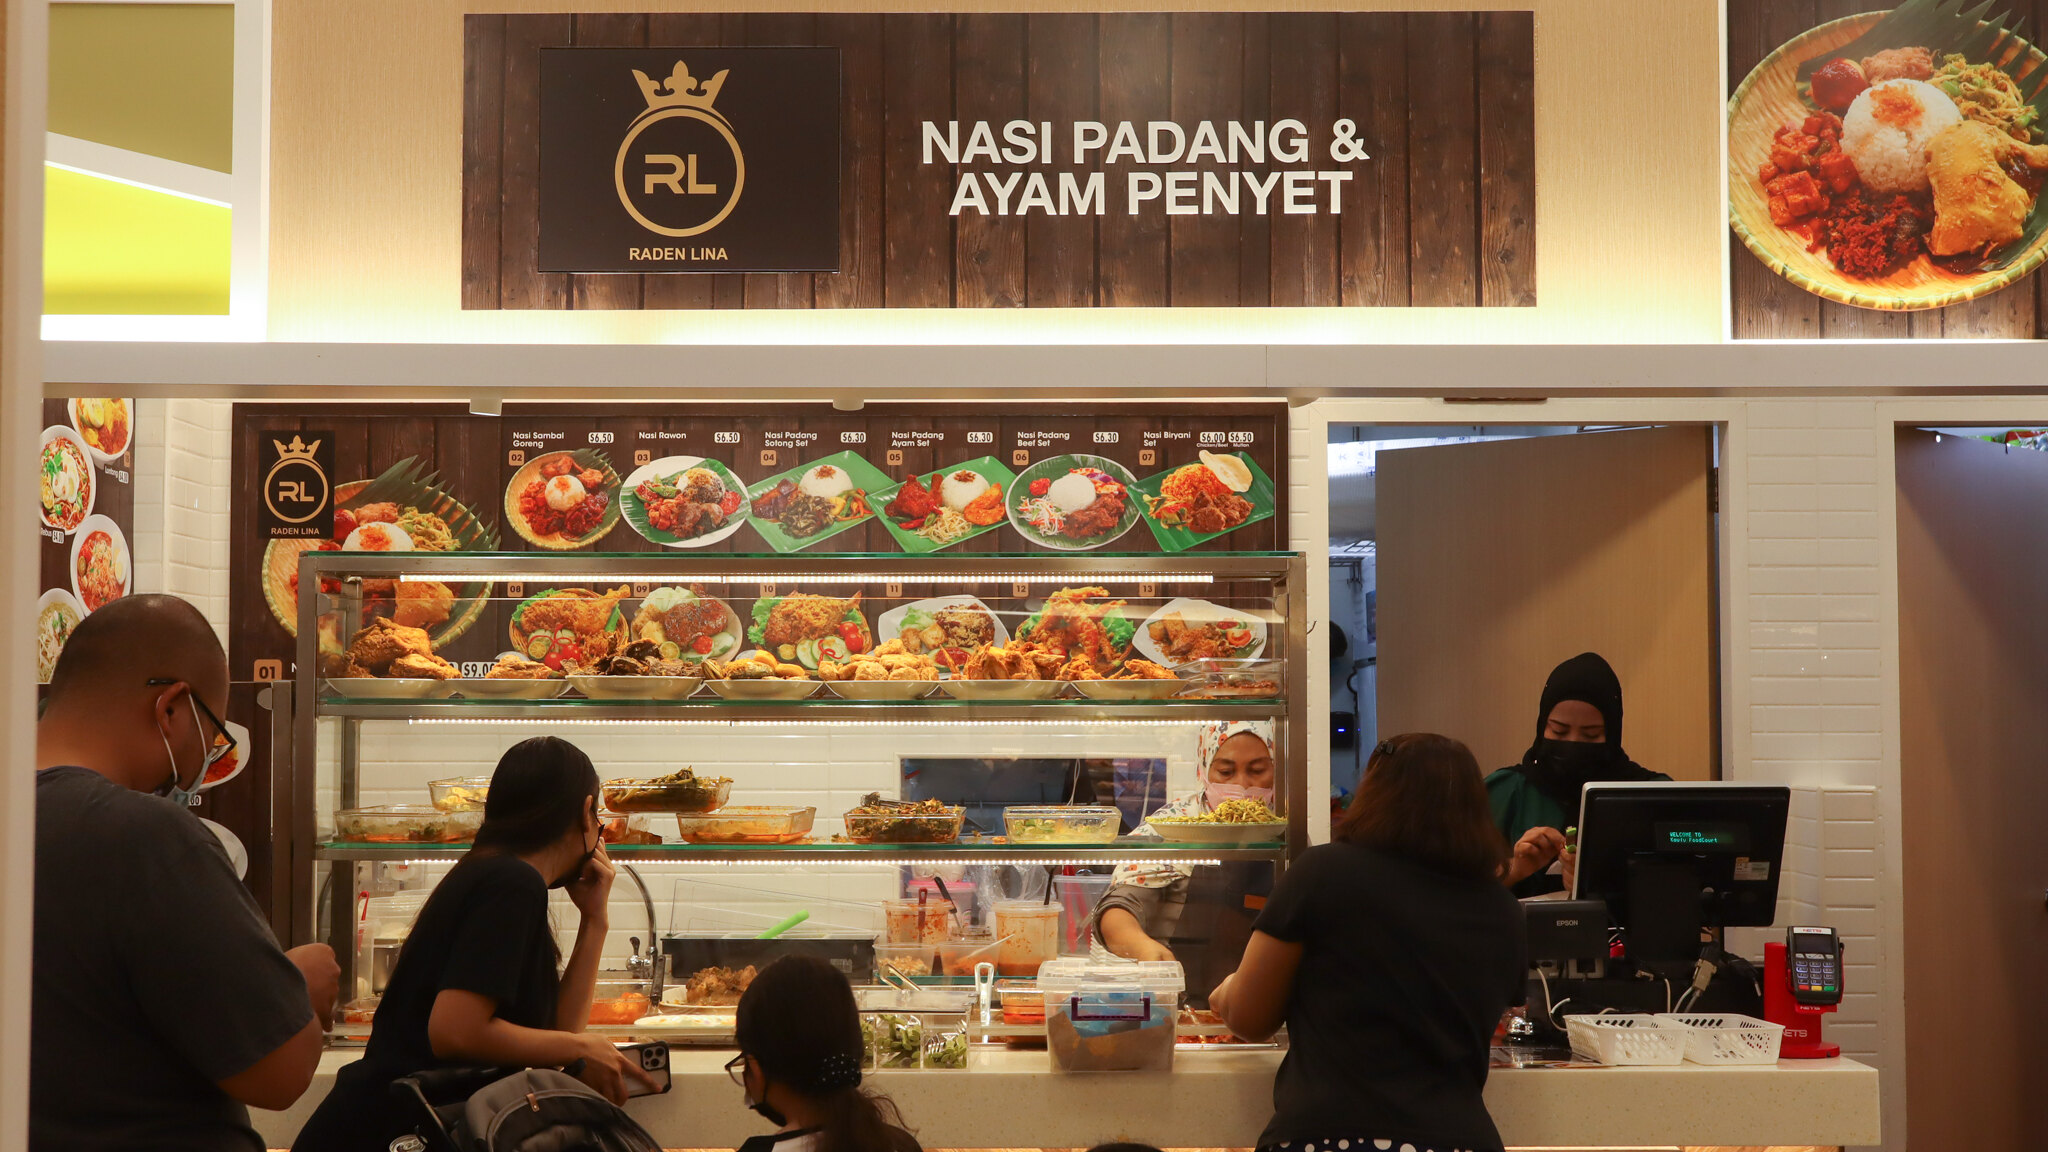 Raden Lina Nasi Padang - store front